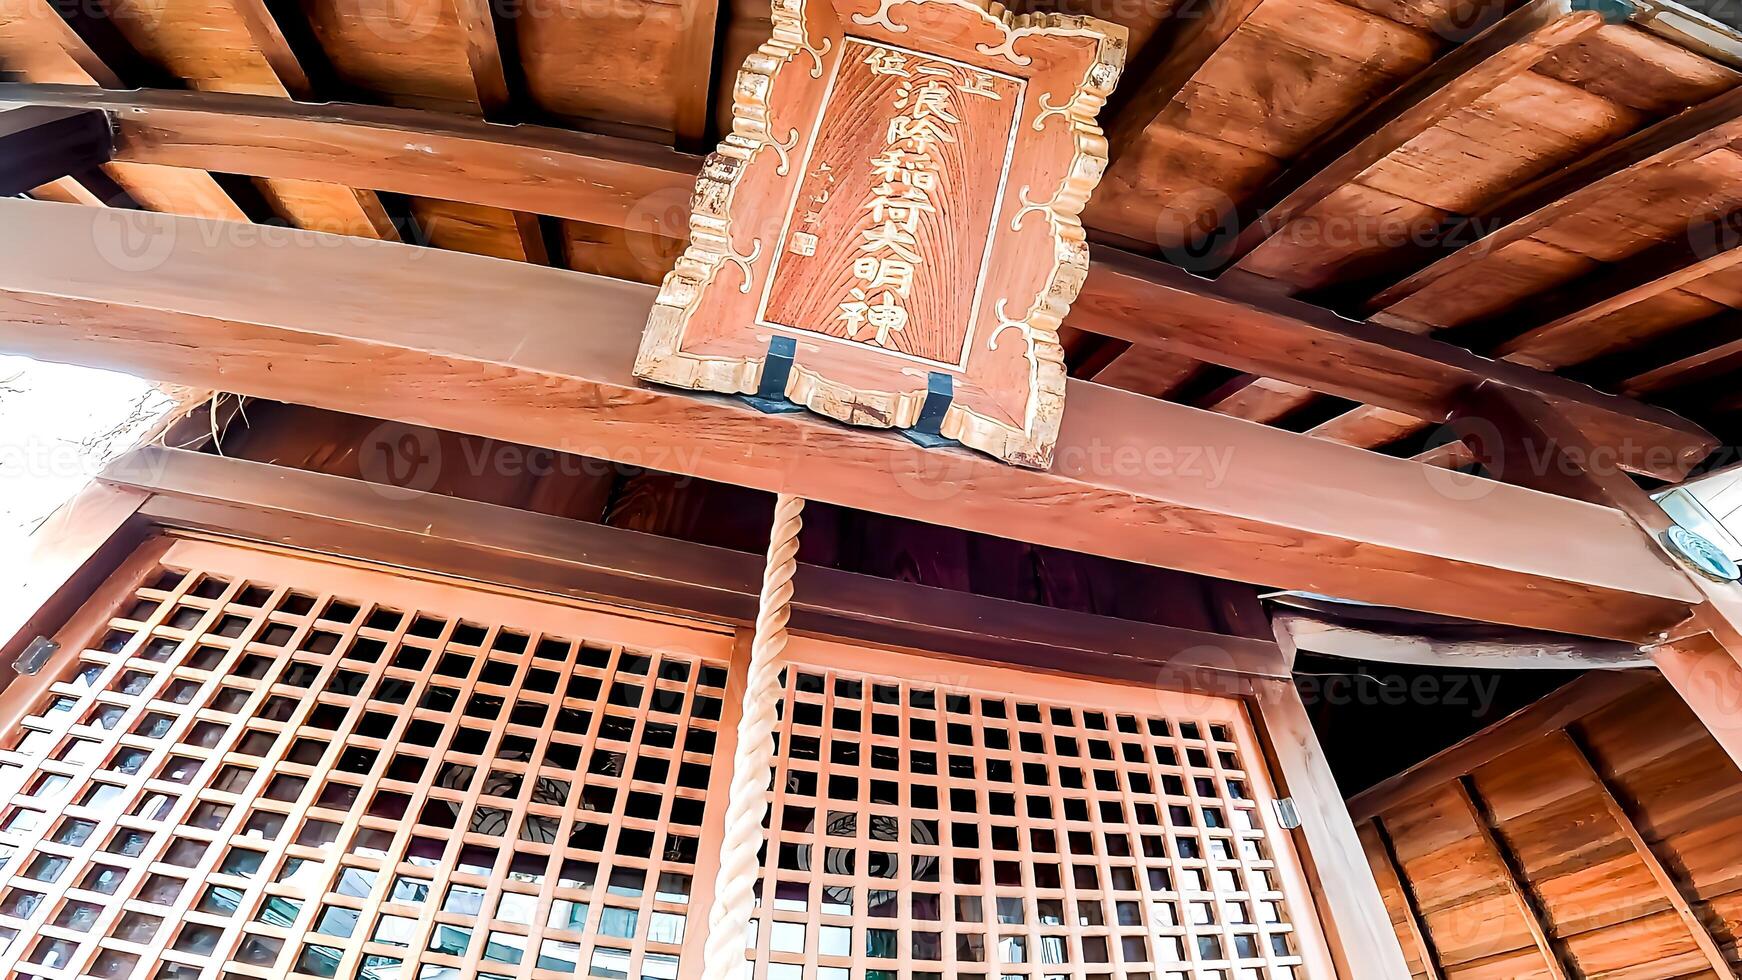 santuario campana y Adoración salón.japón, osaki inari santuario, namiyoke inari santuario, situado en tsukuda, chuo pabellón, tokio foto